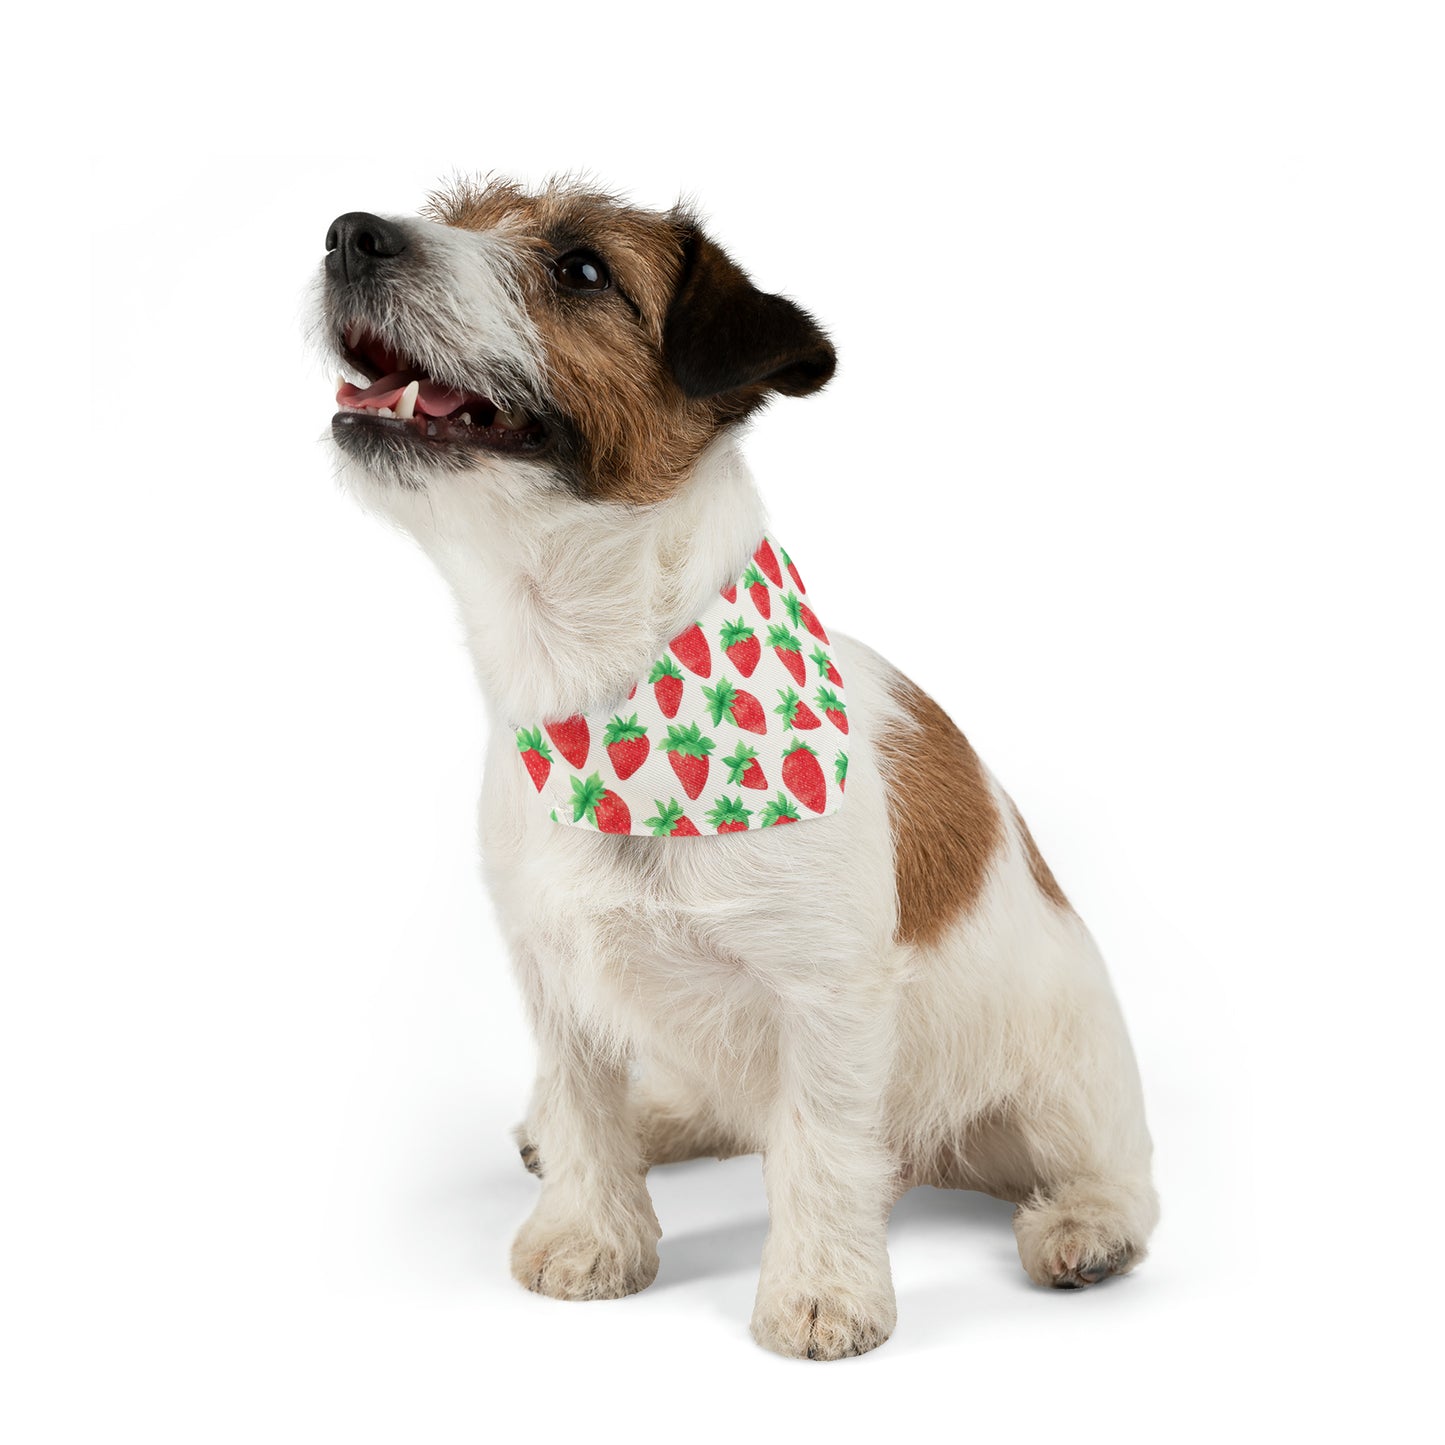 Strawberry Watercolor Pattern Pet Bandana Collar